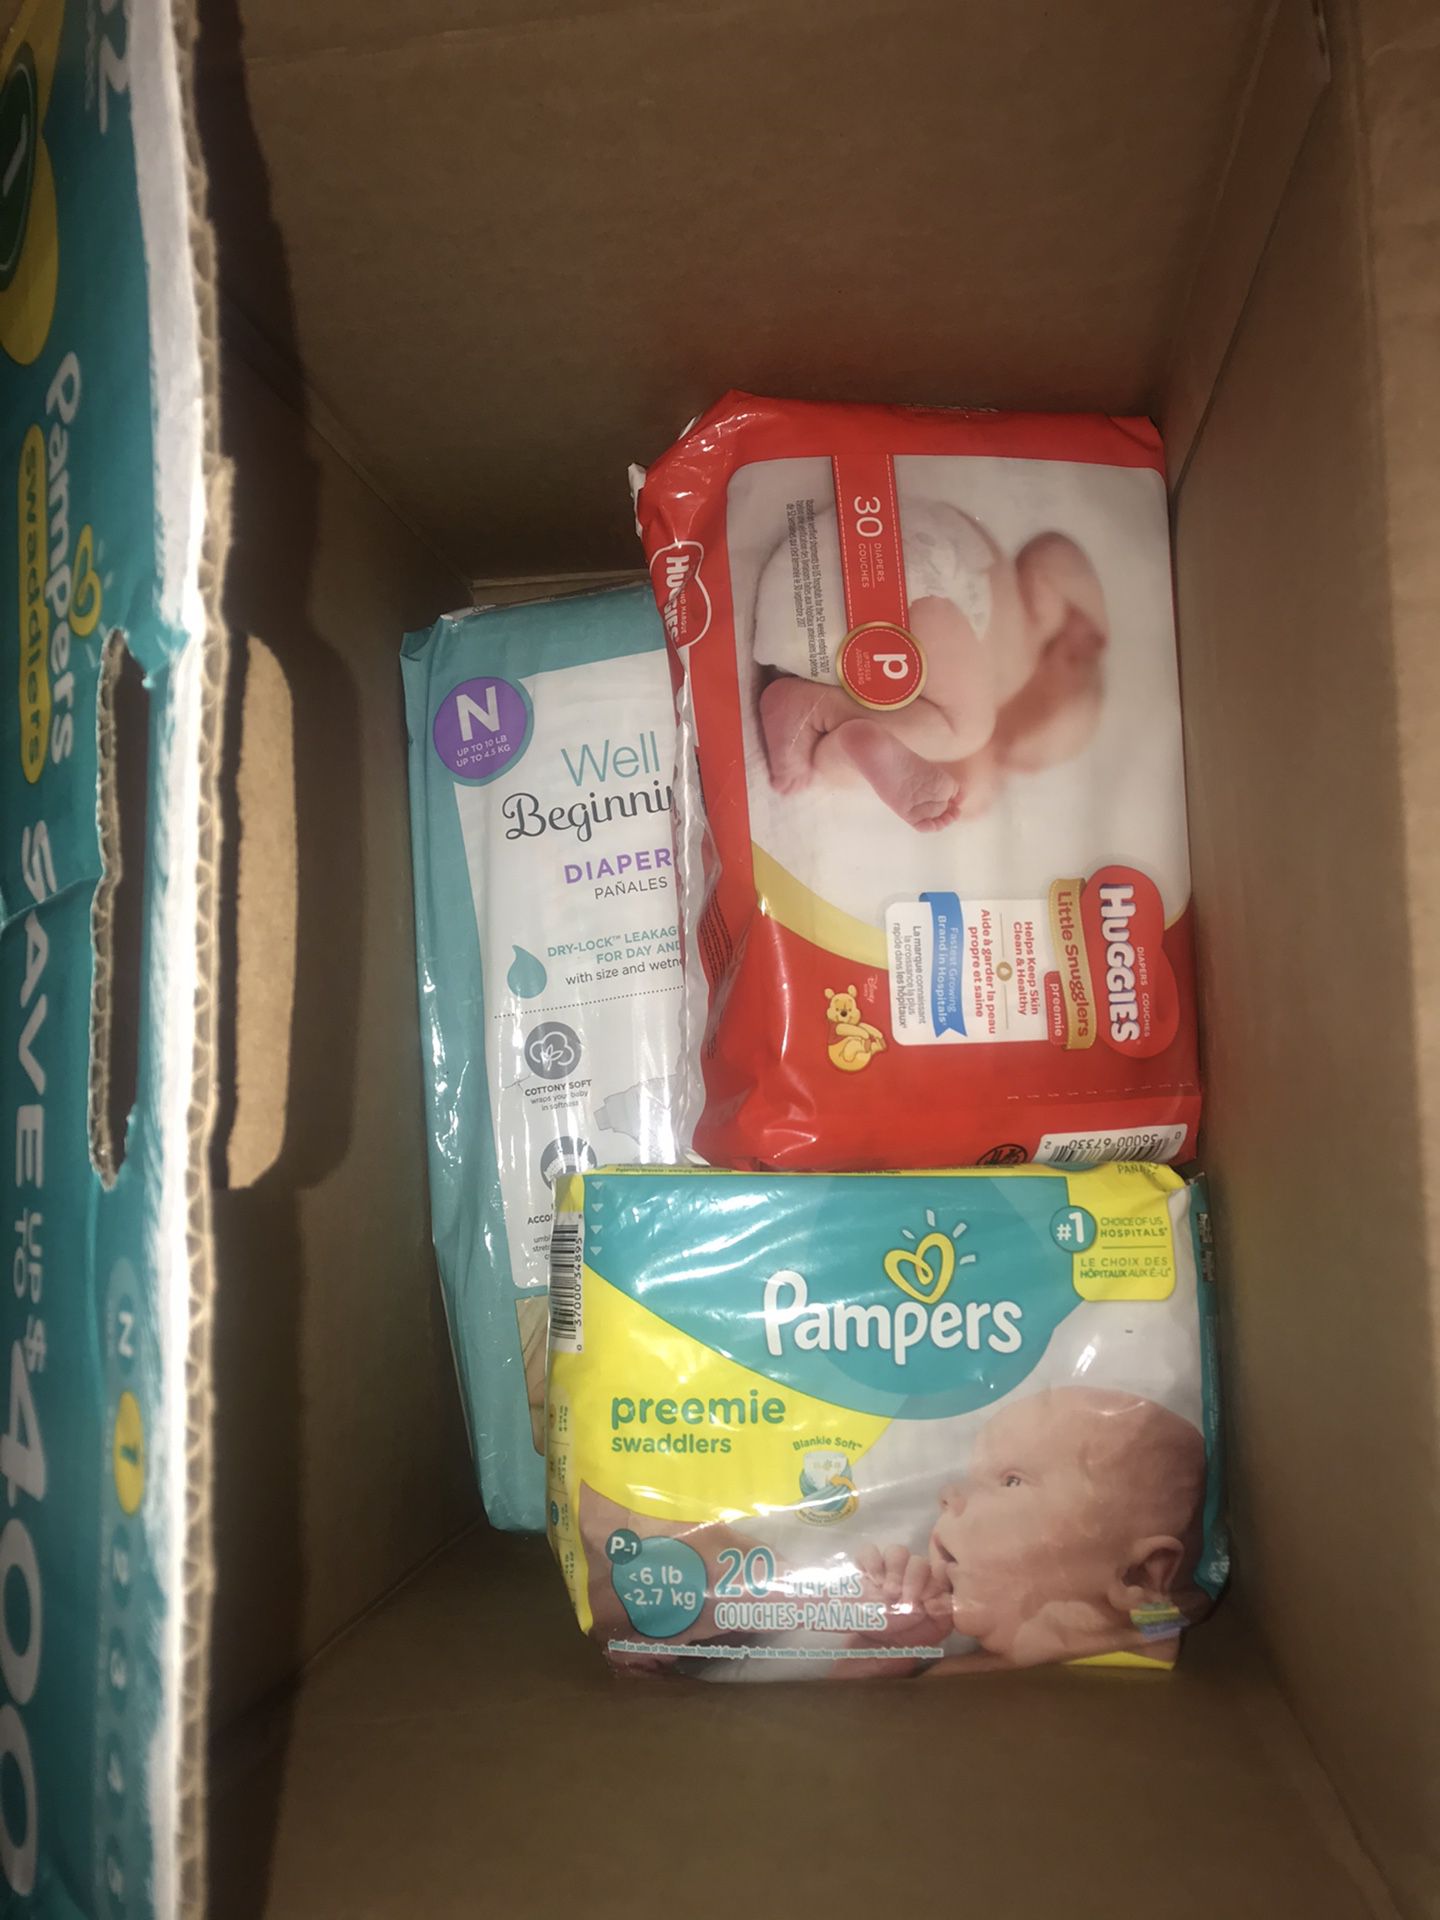 1 pack of newborn 2 packs of Preemie diapers